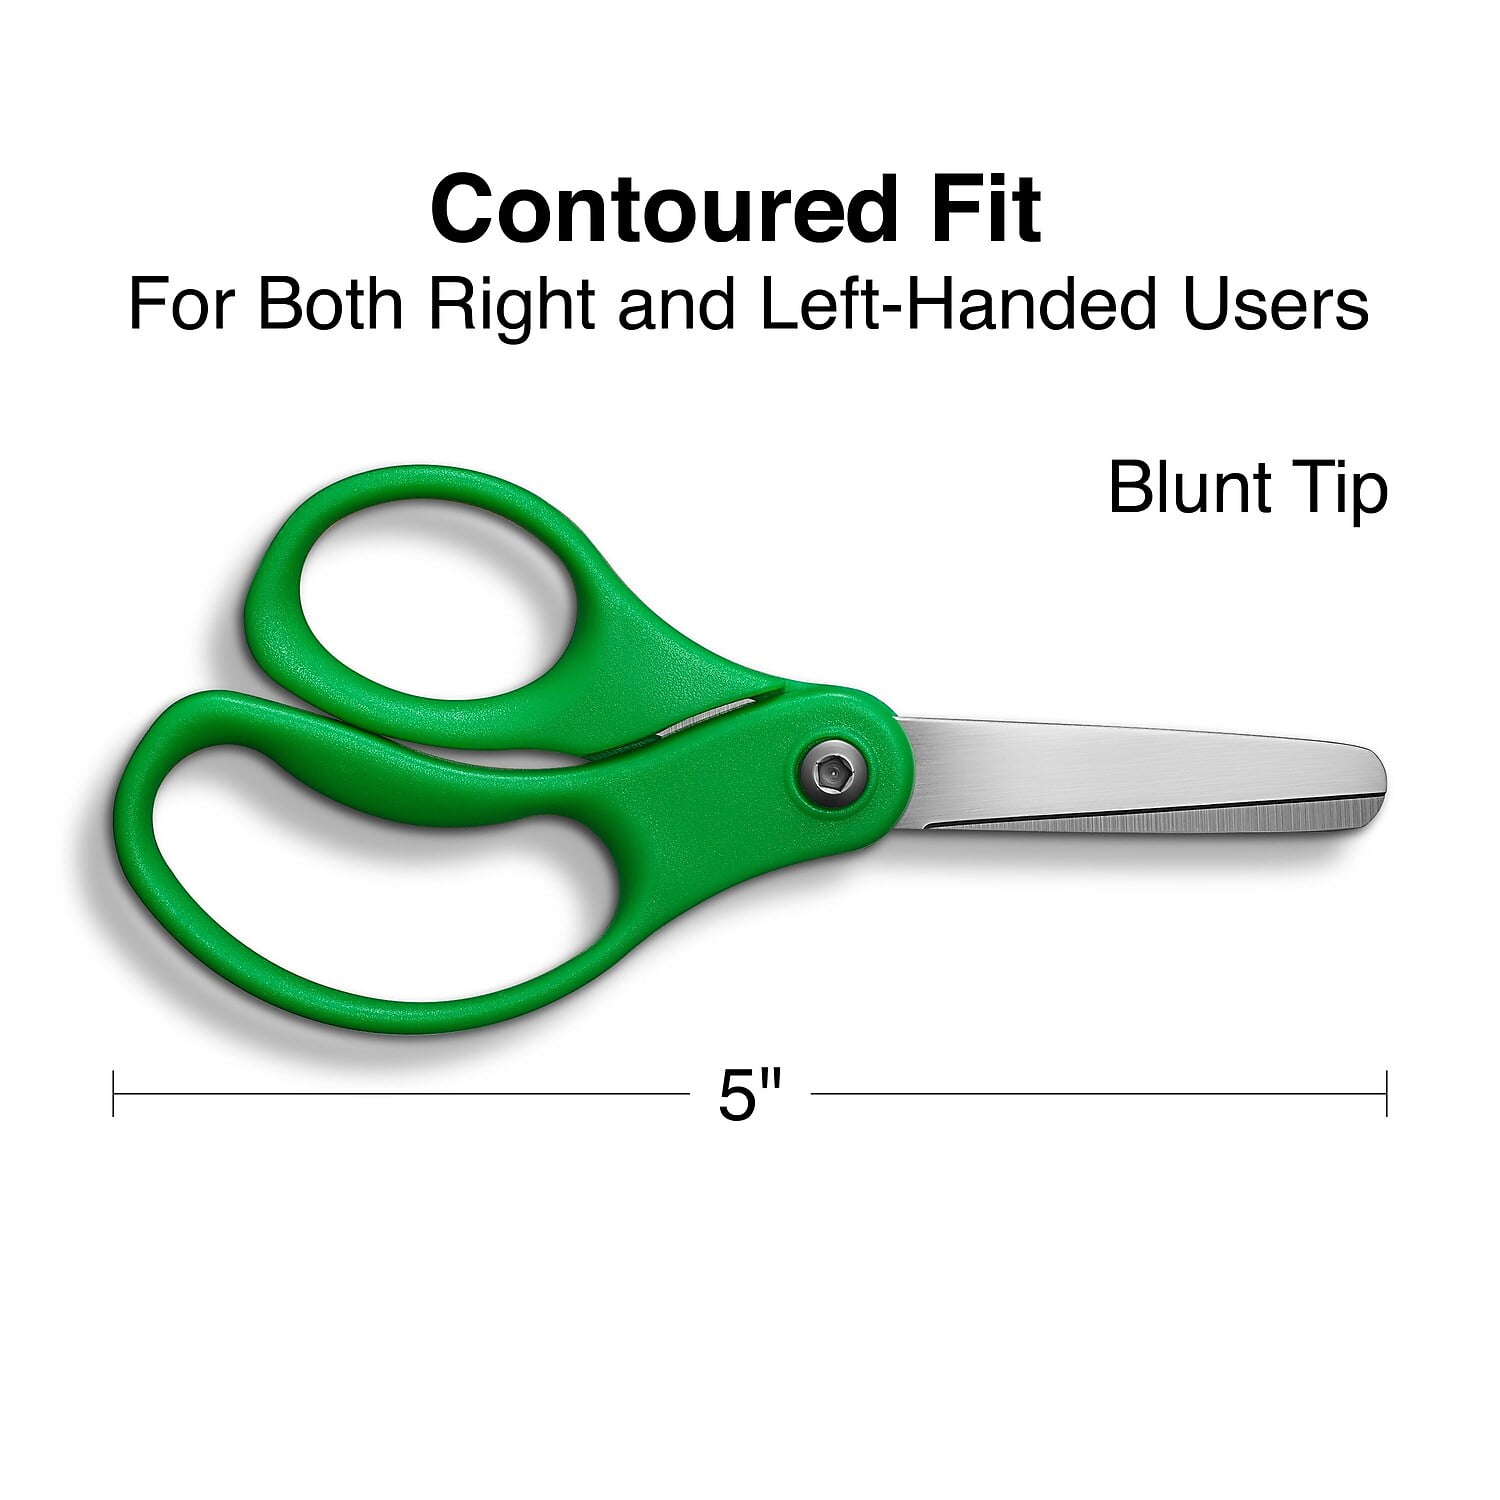 blunt-tip student scissors 7in, Five Below